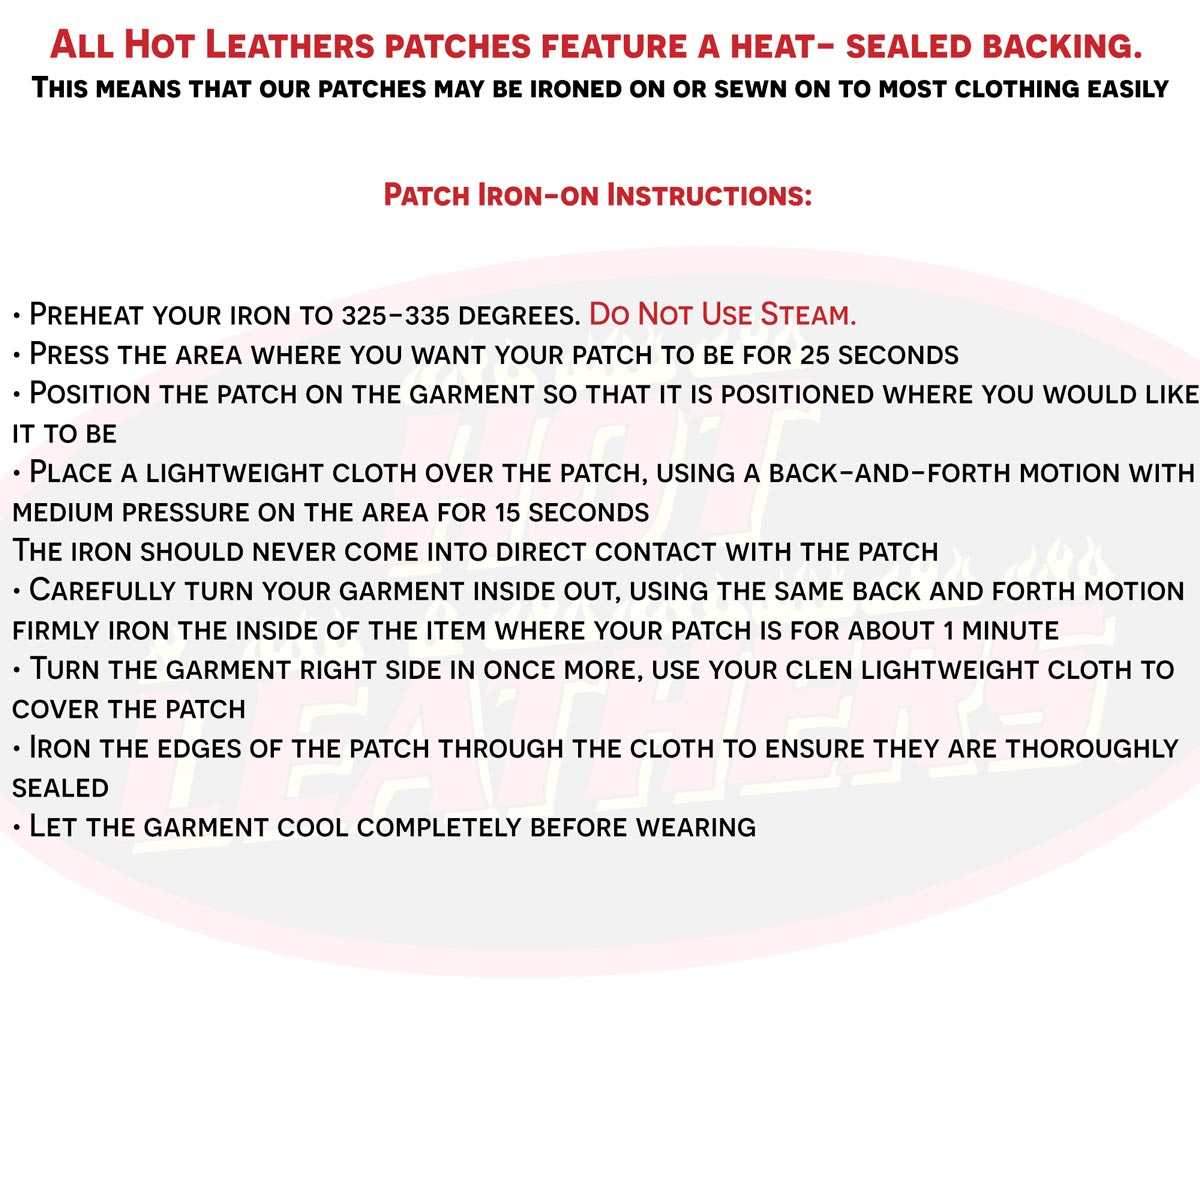 Hot Leathers South Carolina 12” X 3” Top Rocker Patch PPM4079